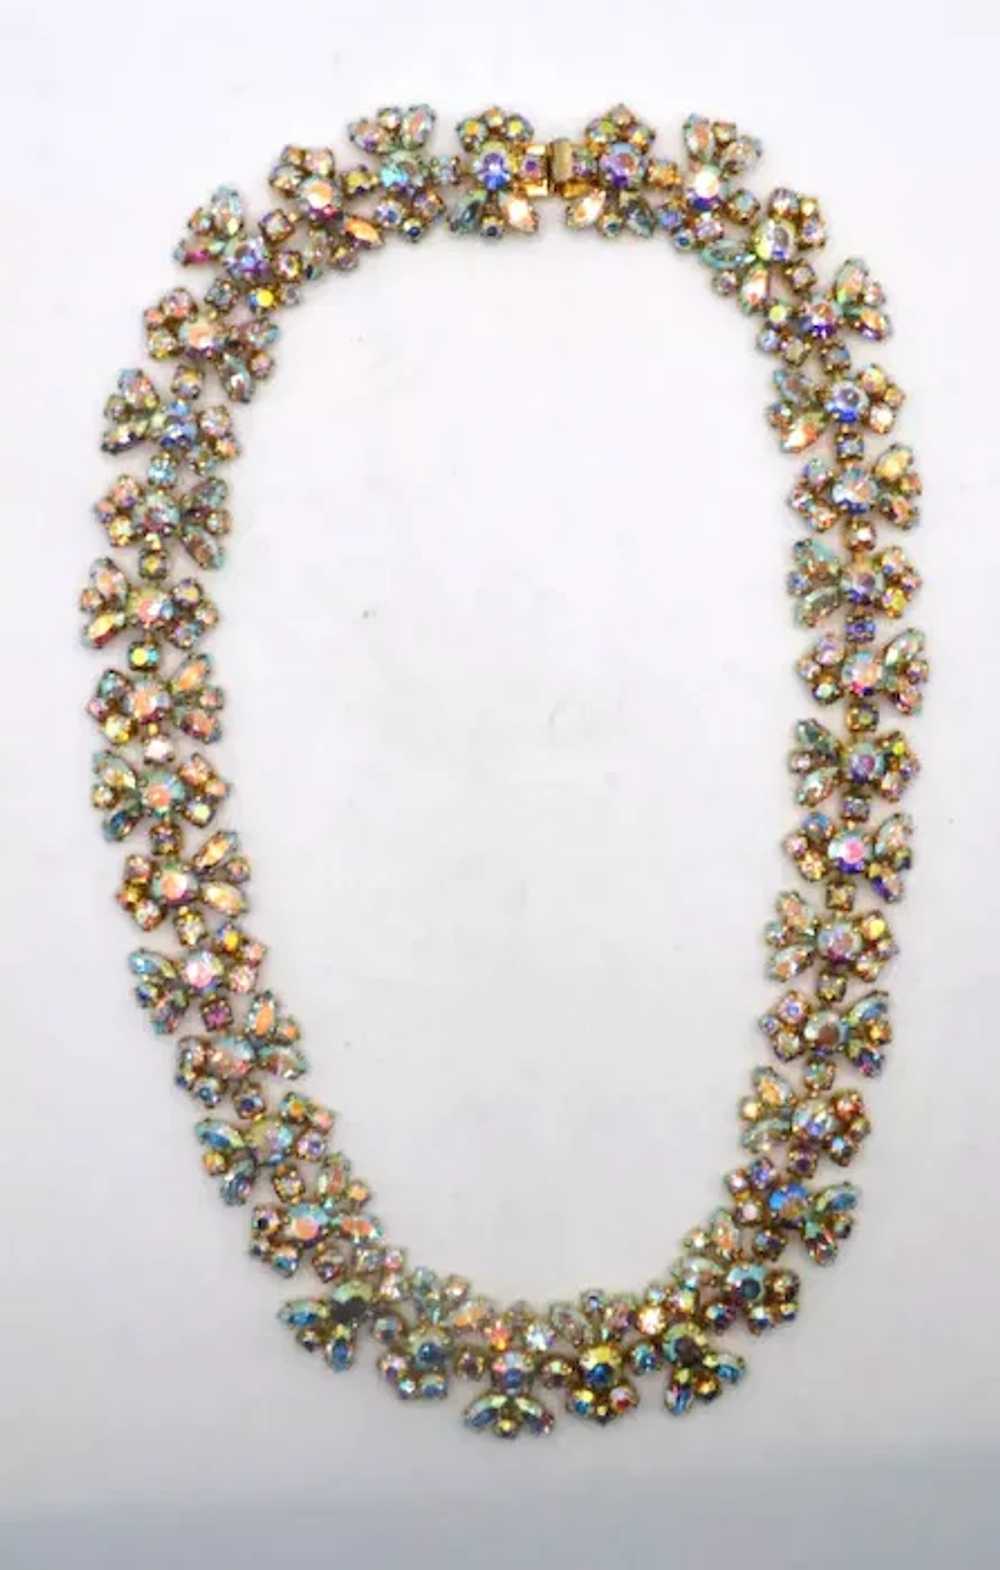 SHERMAN Aurora Borealis Crystals Necklace - image 4